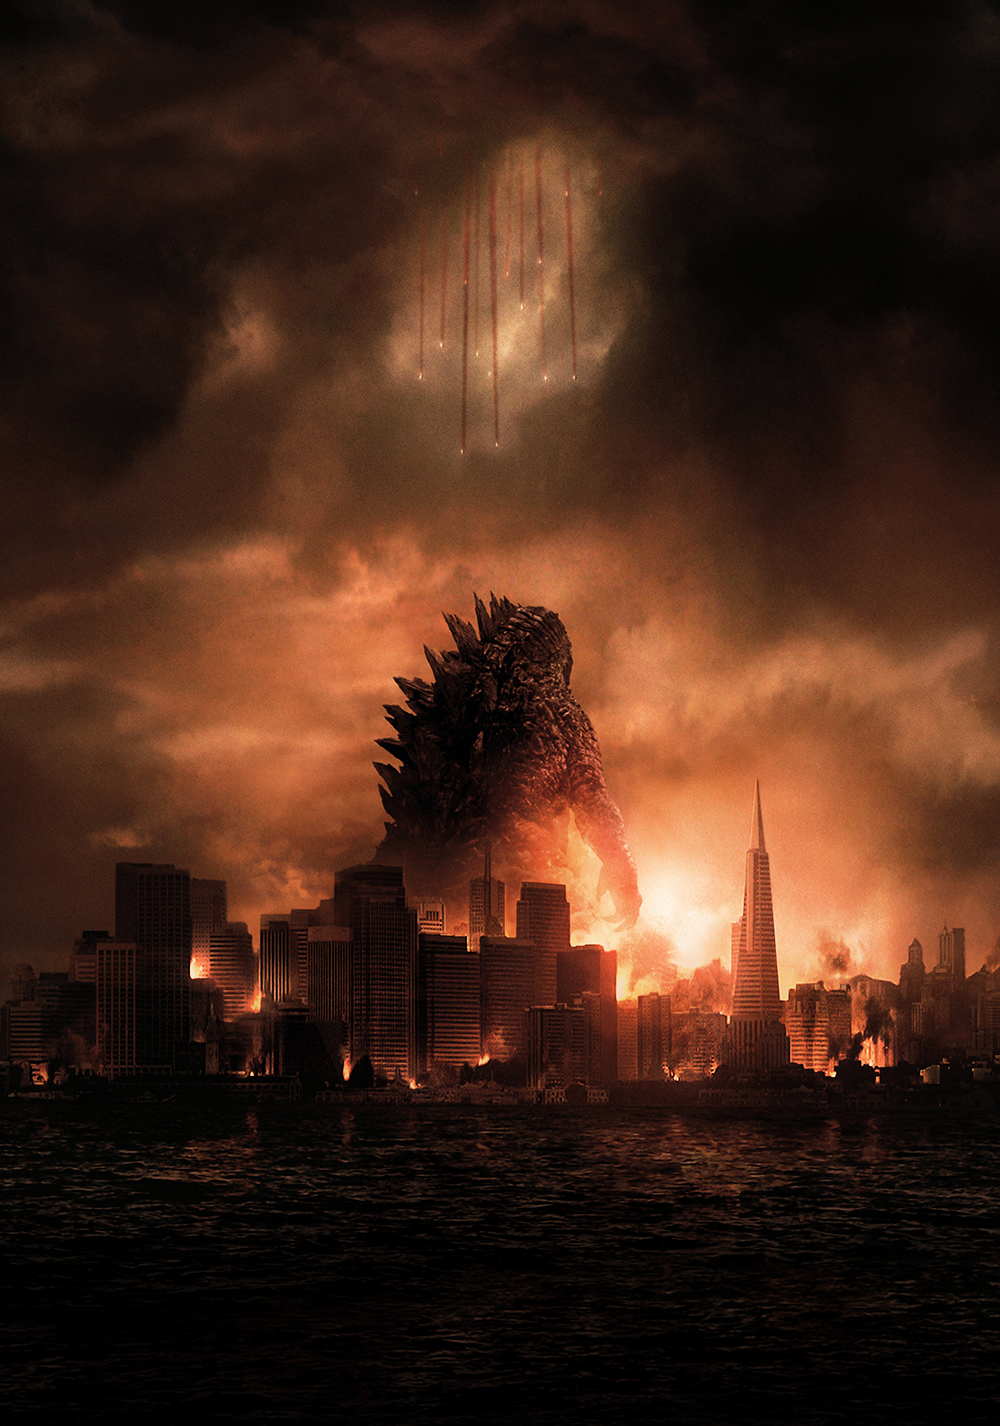 Godzilla (2014) Art